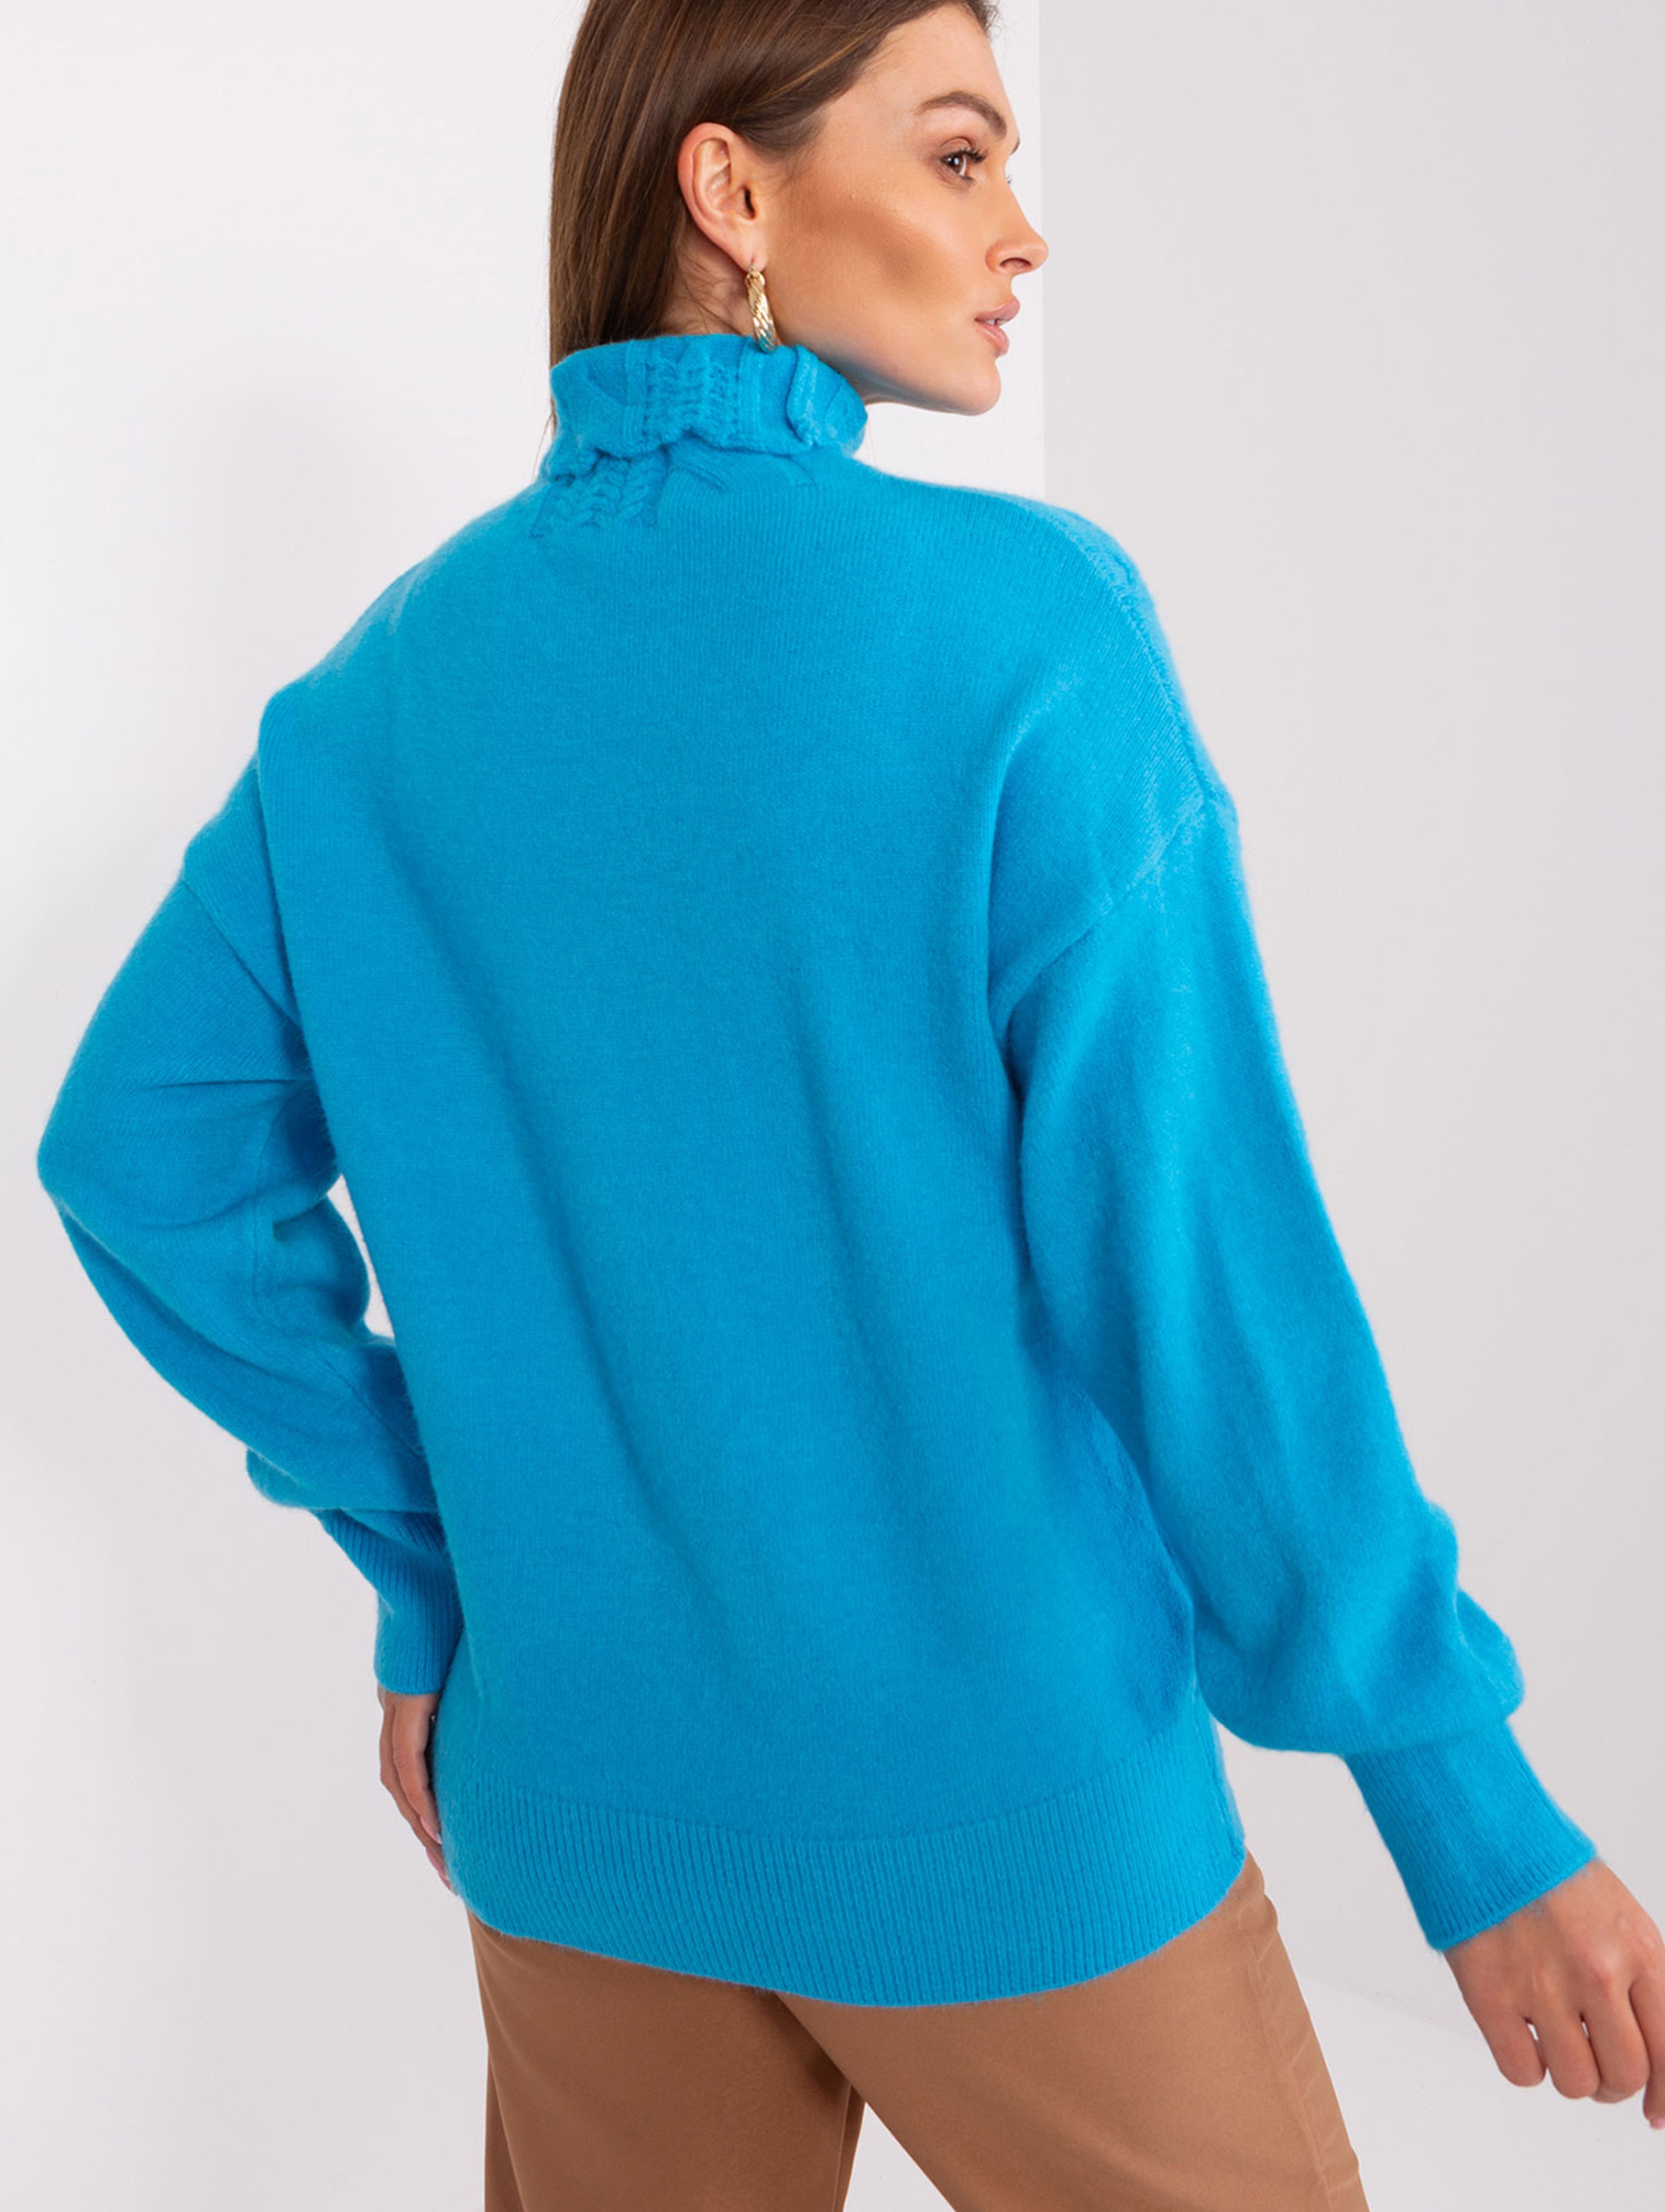 Damski sweter z golfem niebieski